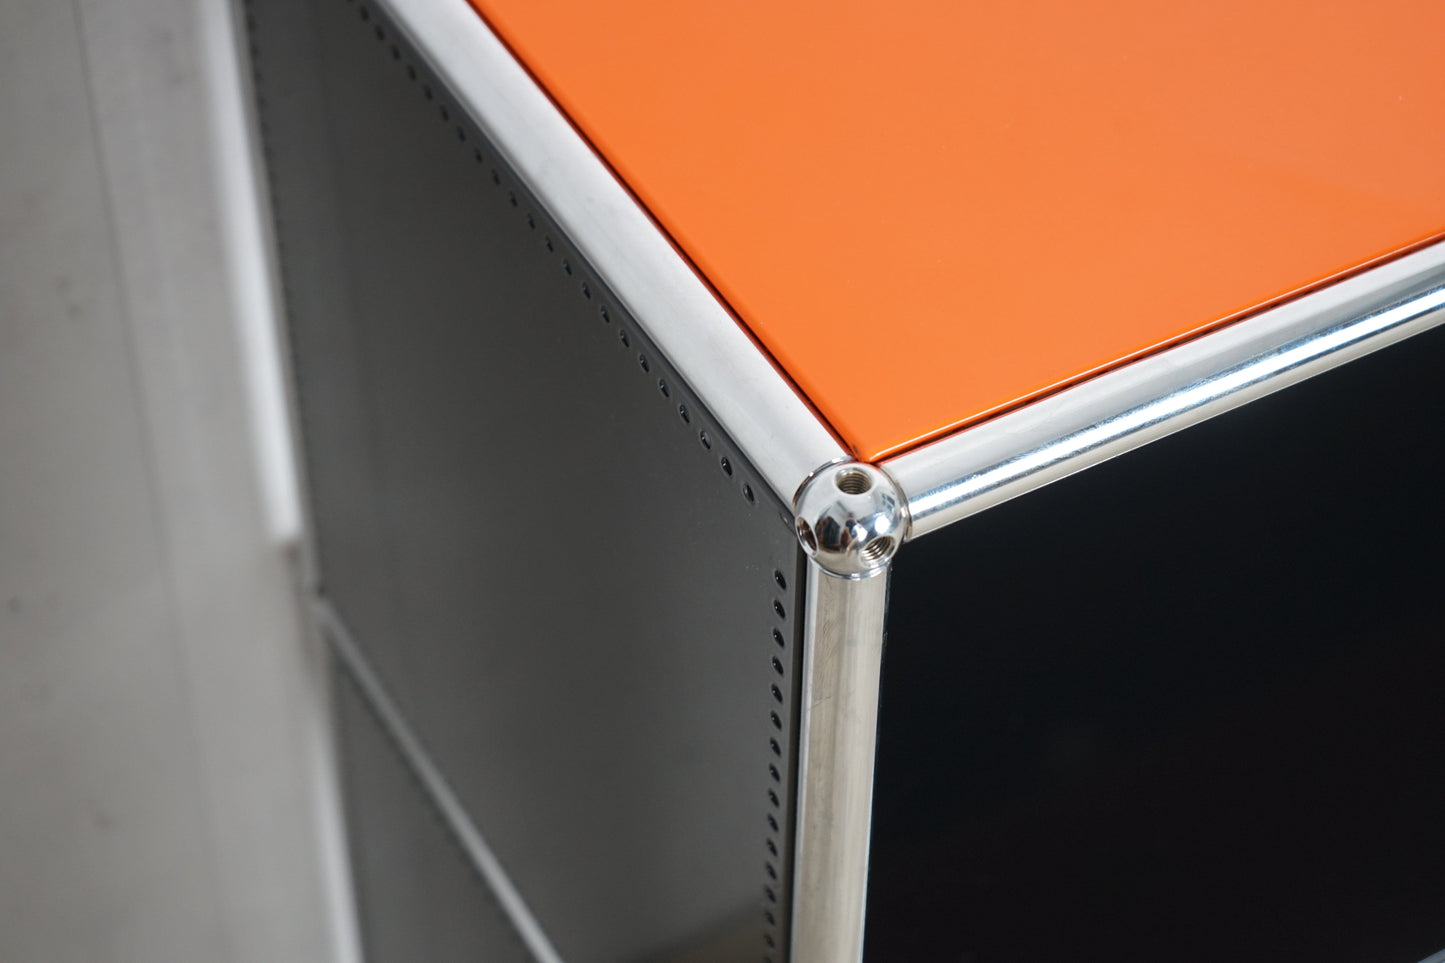 USM Haller Sideboard Shelf Graphite Black / Pure Orange